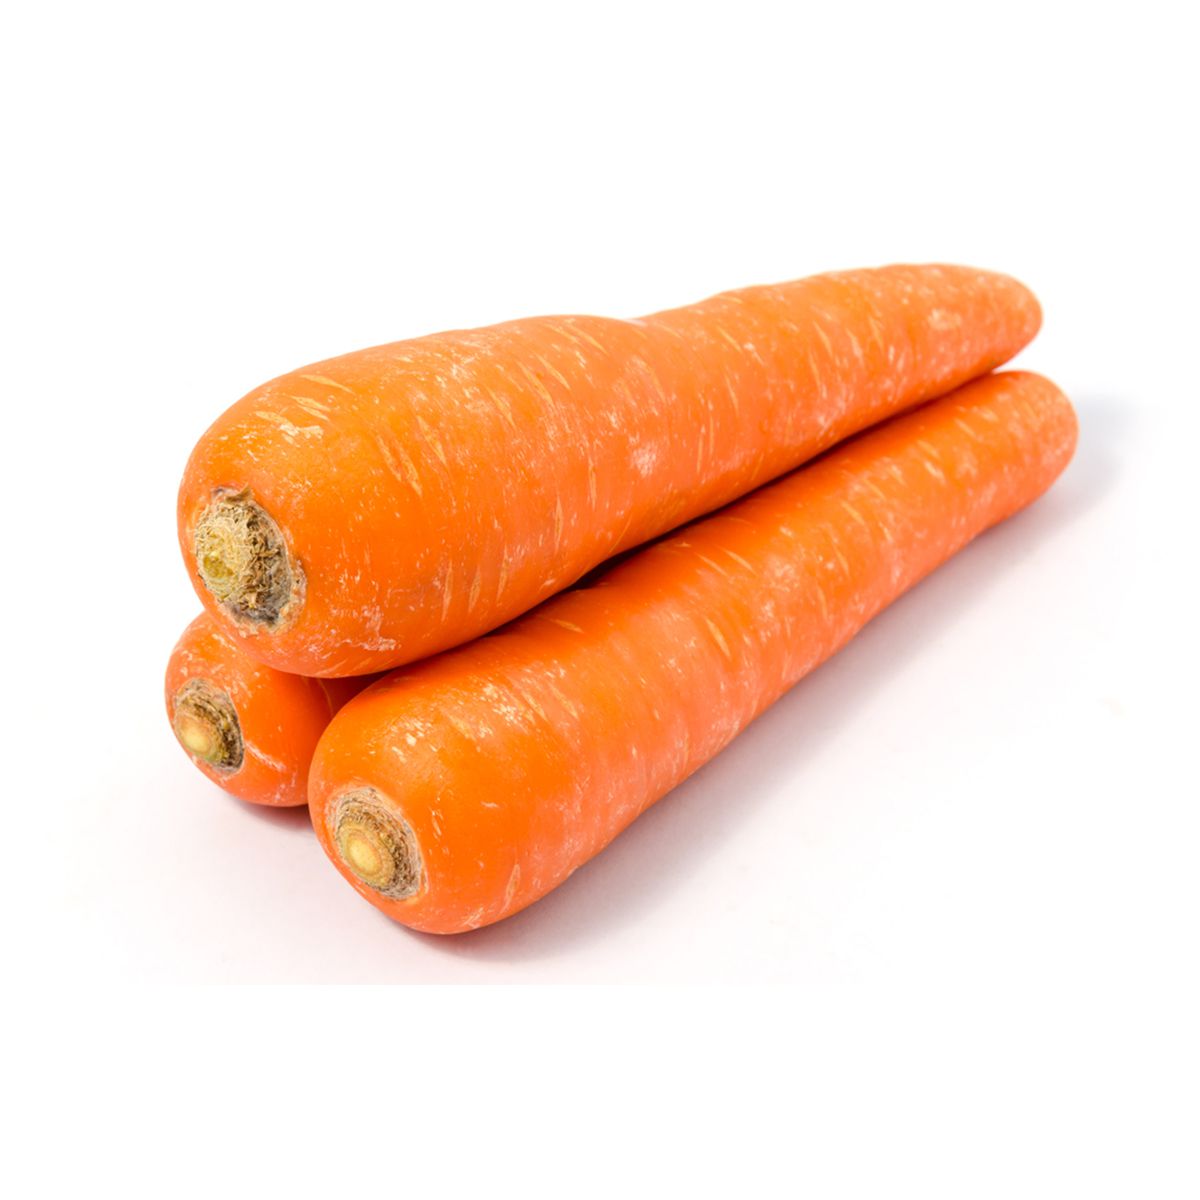 Cal-Organic Farms Organic Jumbo Carrots